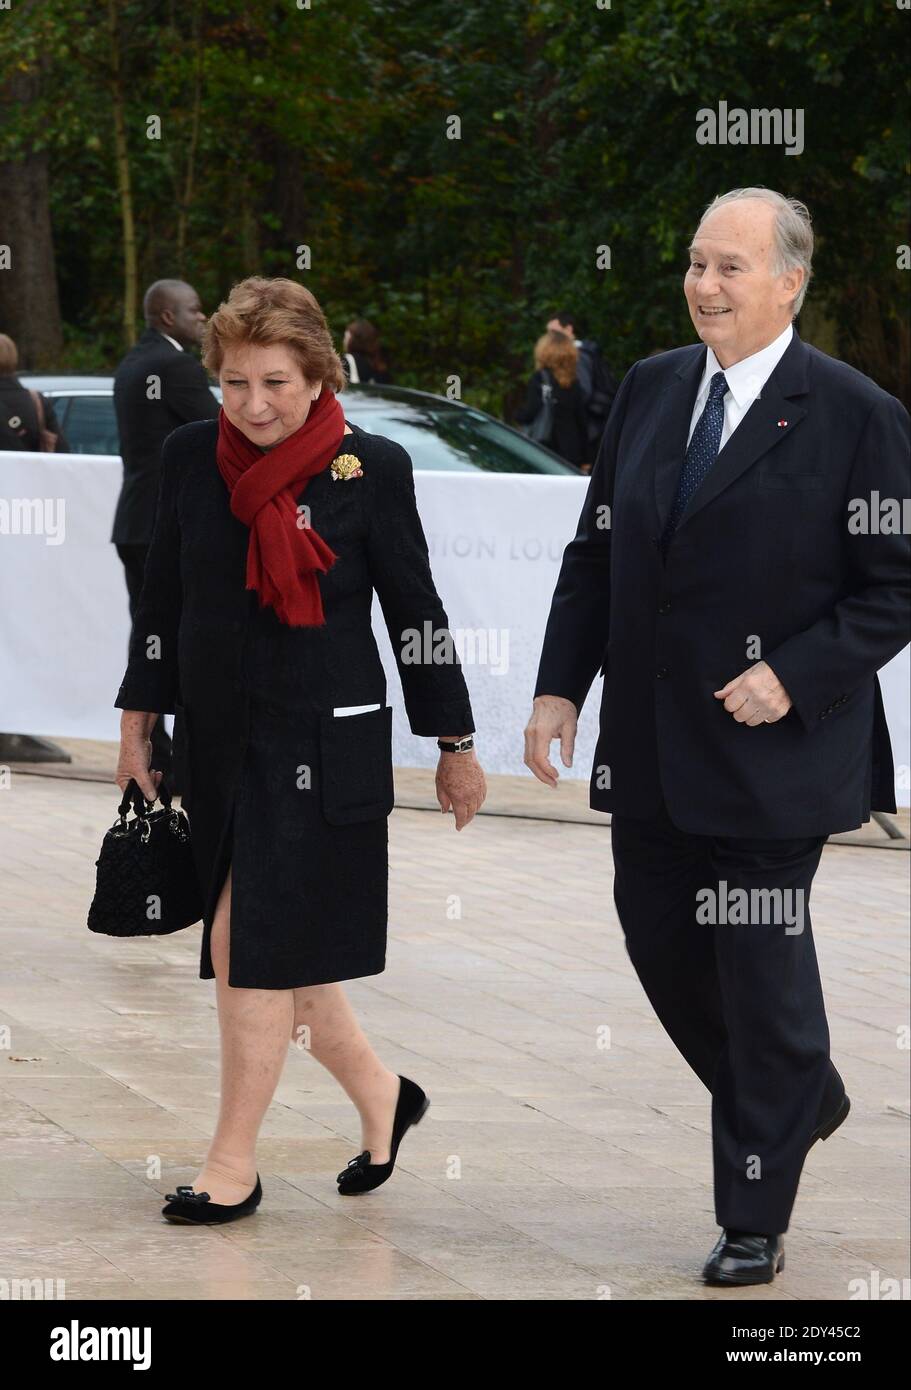 Prinz Shah Karim Al Hussaini Aga Khan bei der Ankunft im Louis Vuitton Kunstmuseum, eine Woche vor seiner offiziellen Eröffnung für die Öffentlichkeit, am 20. Oktober 2014 in Paris, Frankreich. Foto von ABACAPRESS.COM Stockfoto